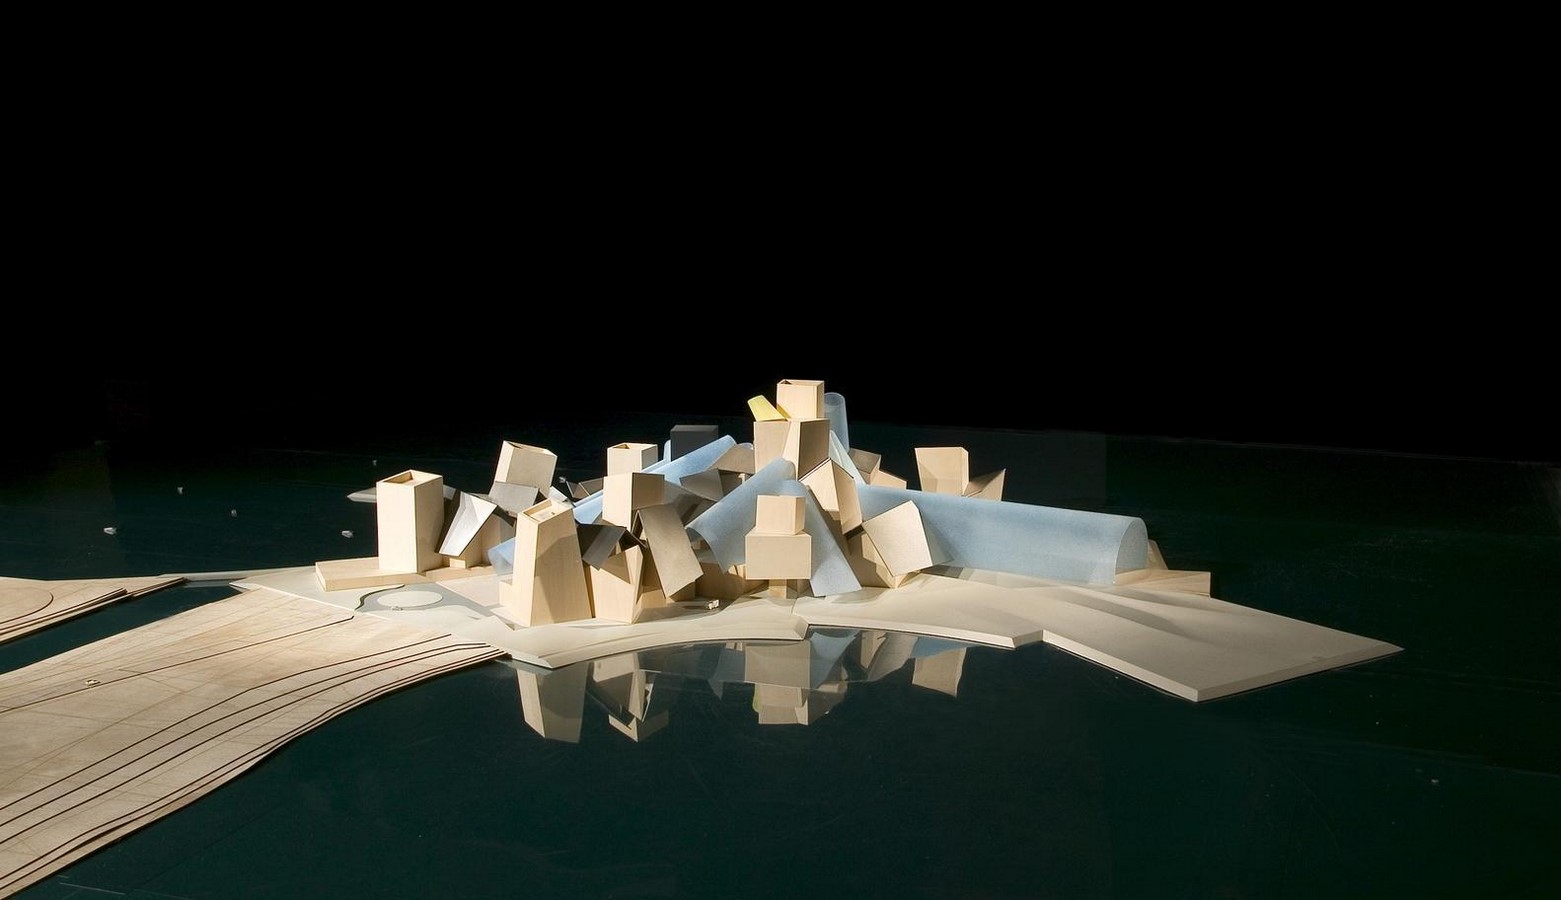 弗兰克·盖里:创造雕塑建筑的解构主义建筑师- Sheet23